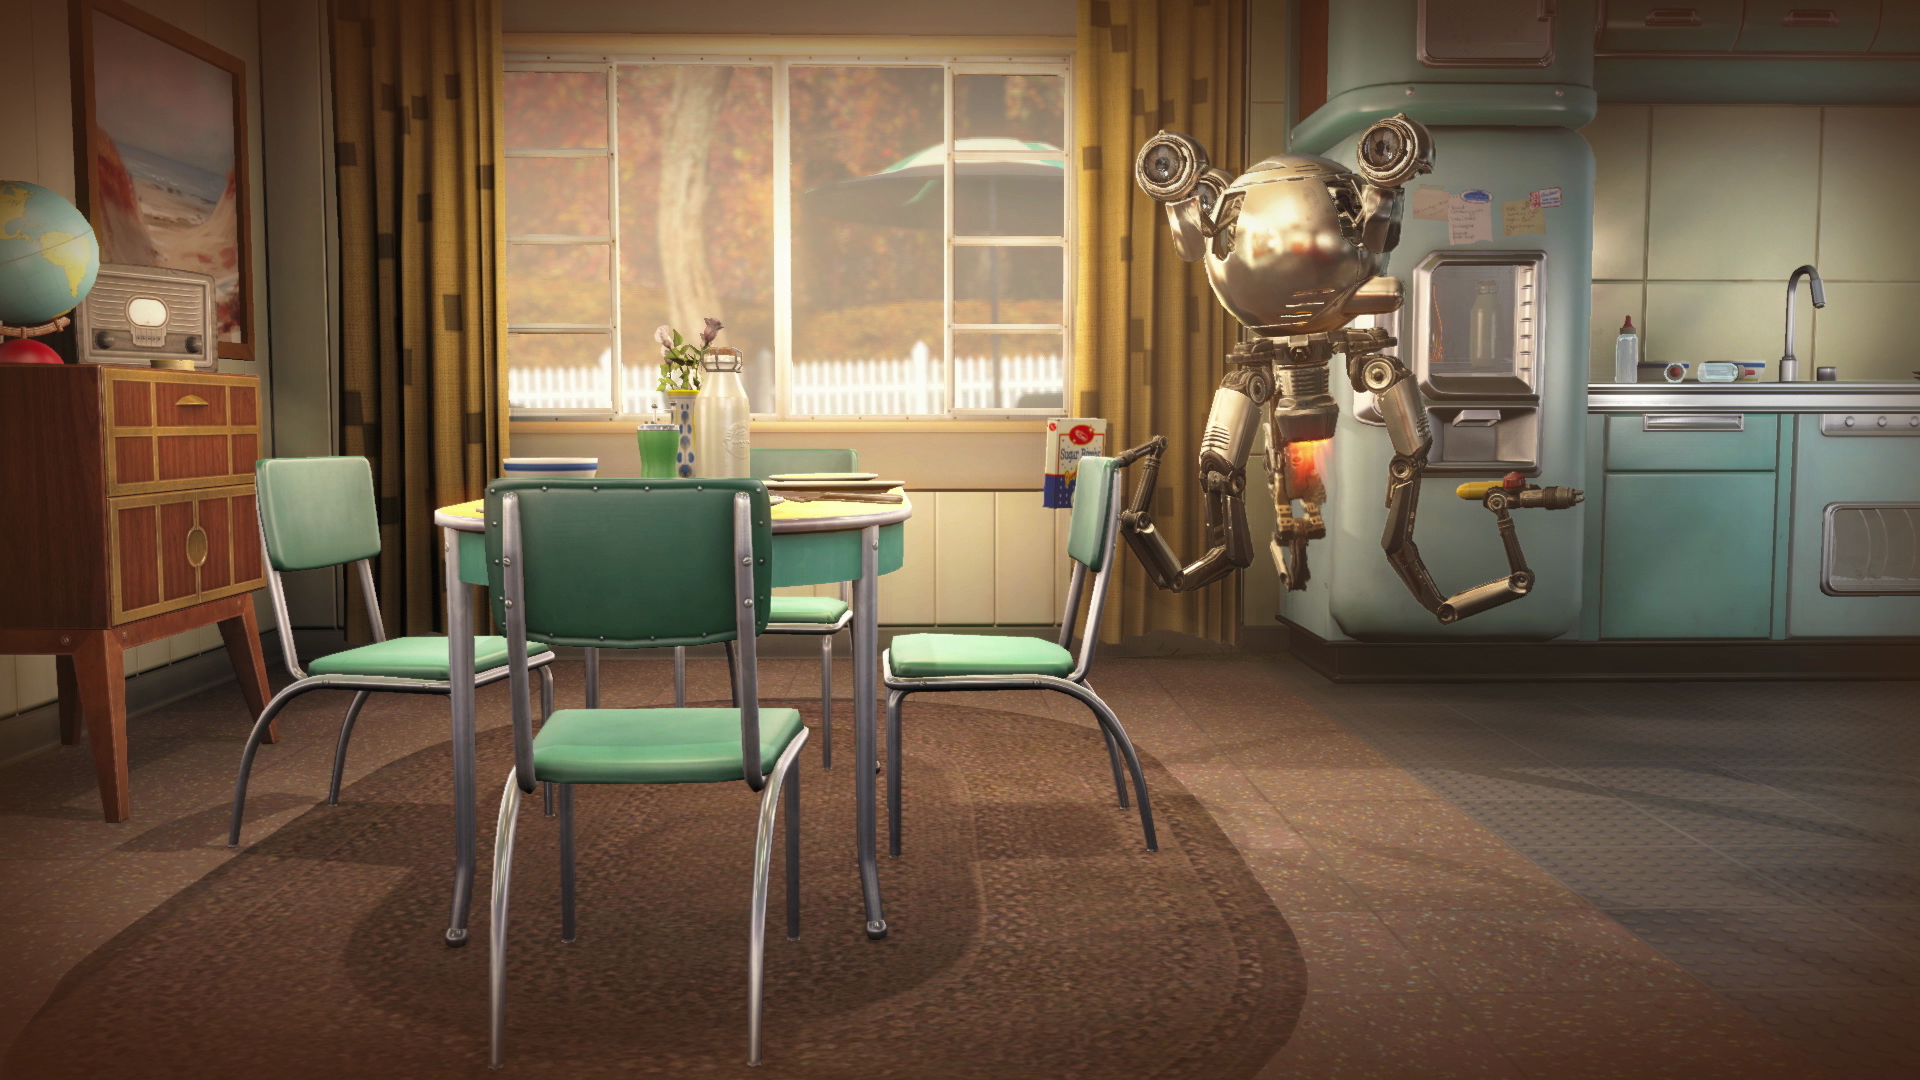 Immagine pubblicata in relazione al seguente contenuto: Primi trailer e screenshot ufficiali in Full HD del game Fallout 4 di Bethesda | Nome immagine: news22682_Bethesda-Fallout-4-screenshot_1.png